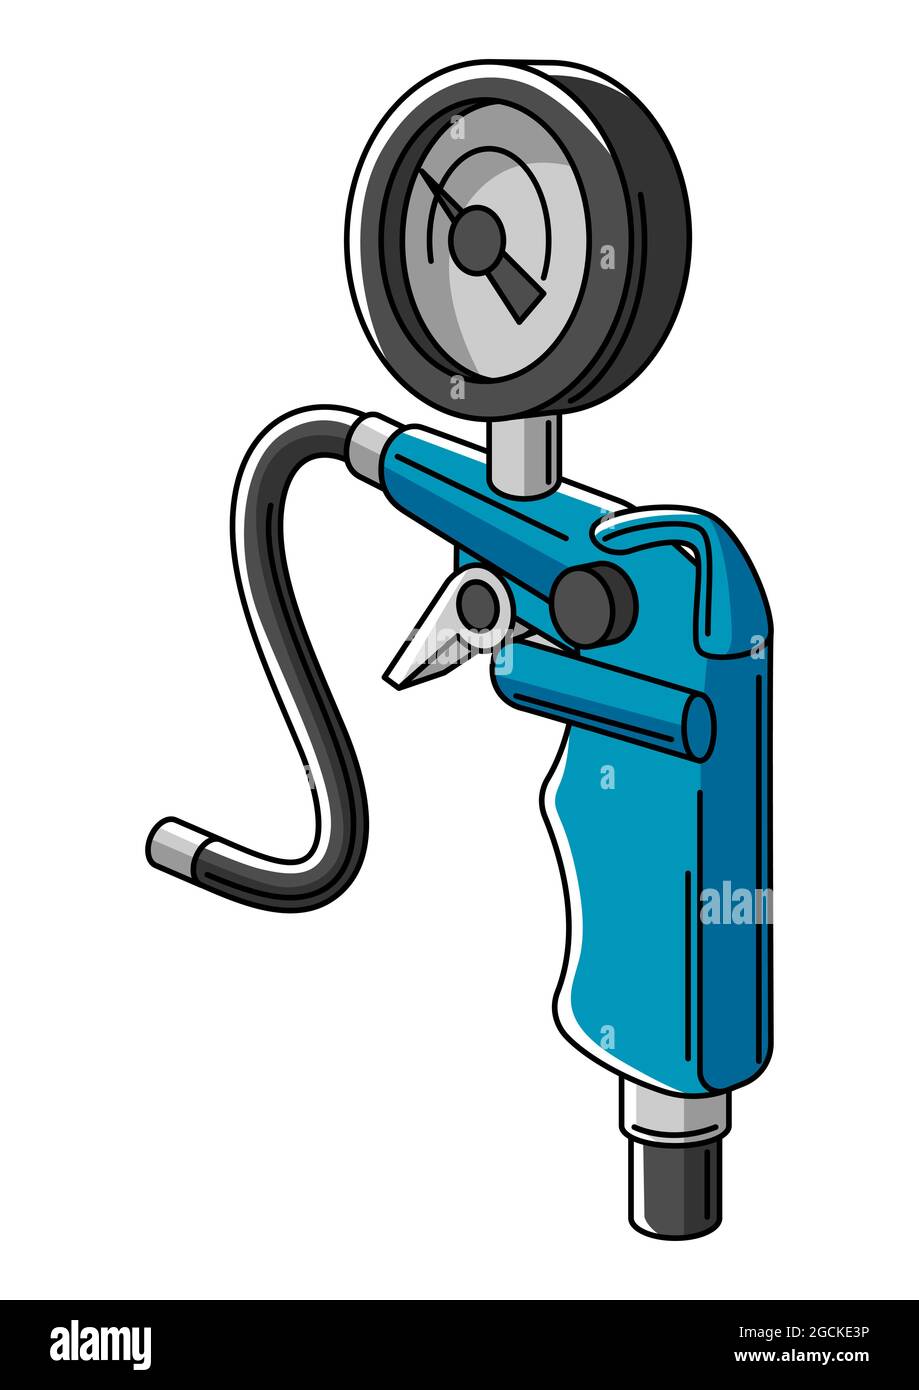 Illustration of car tire inflation pump. Auto center repair item